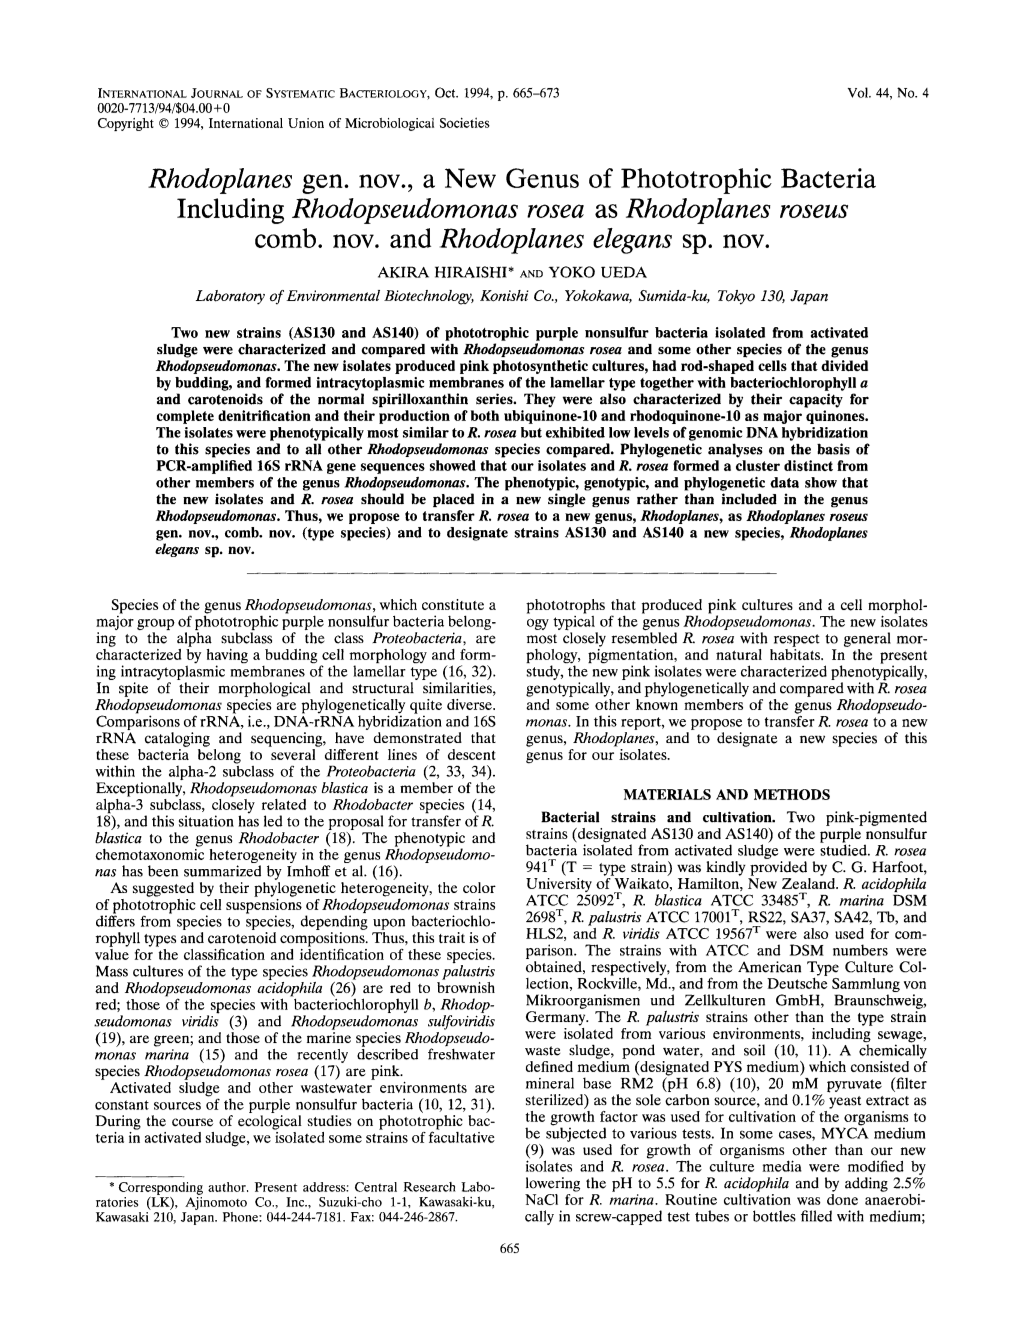 Rhodoplanes Gen. Nov., a New Genus of Phototrophic Including